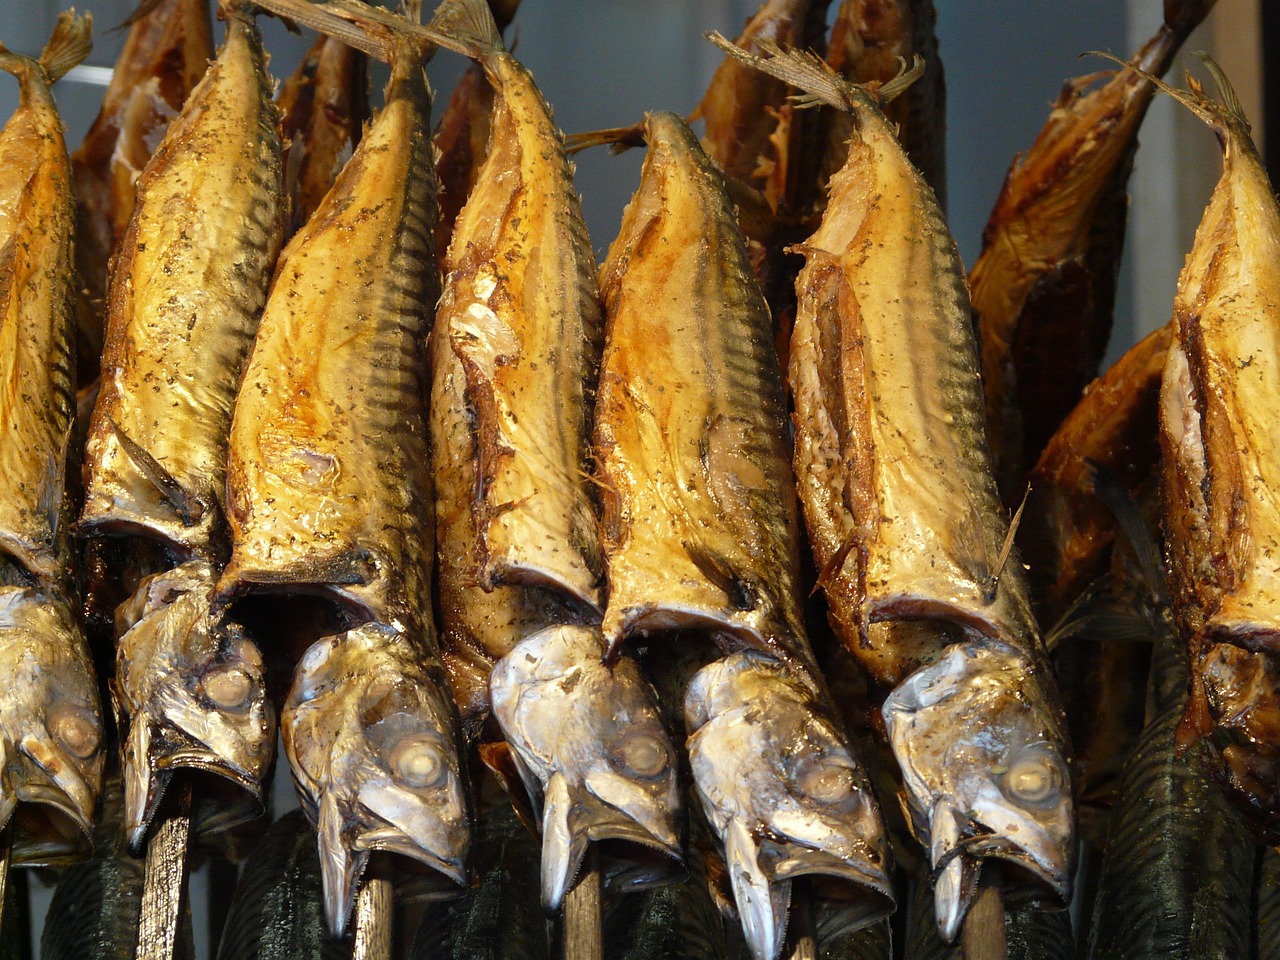 Mackerel Fishery -Smoked fish